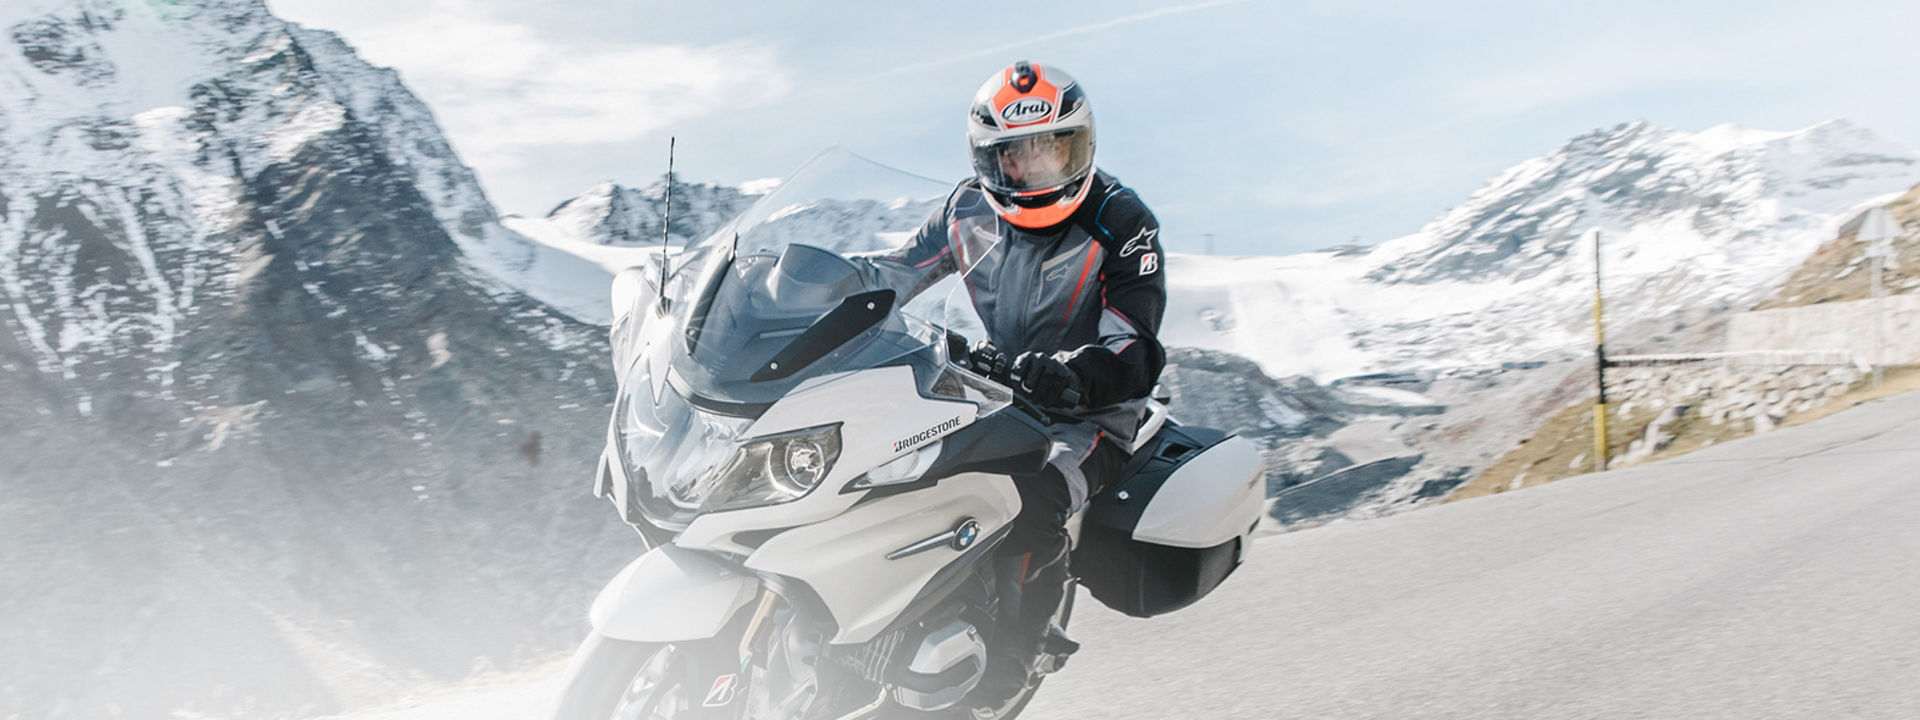 L'immagine mostra un motociclista in sella alla sua moto con pneumatici Bridgestone Touring su una strada panoramica.